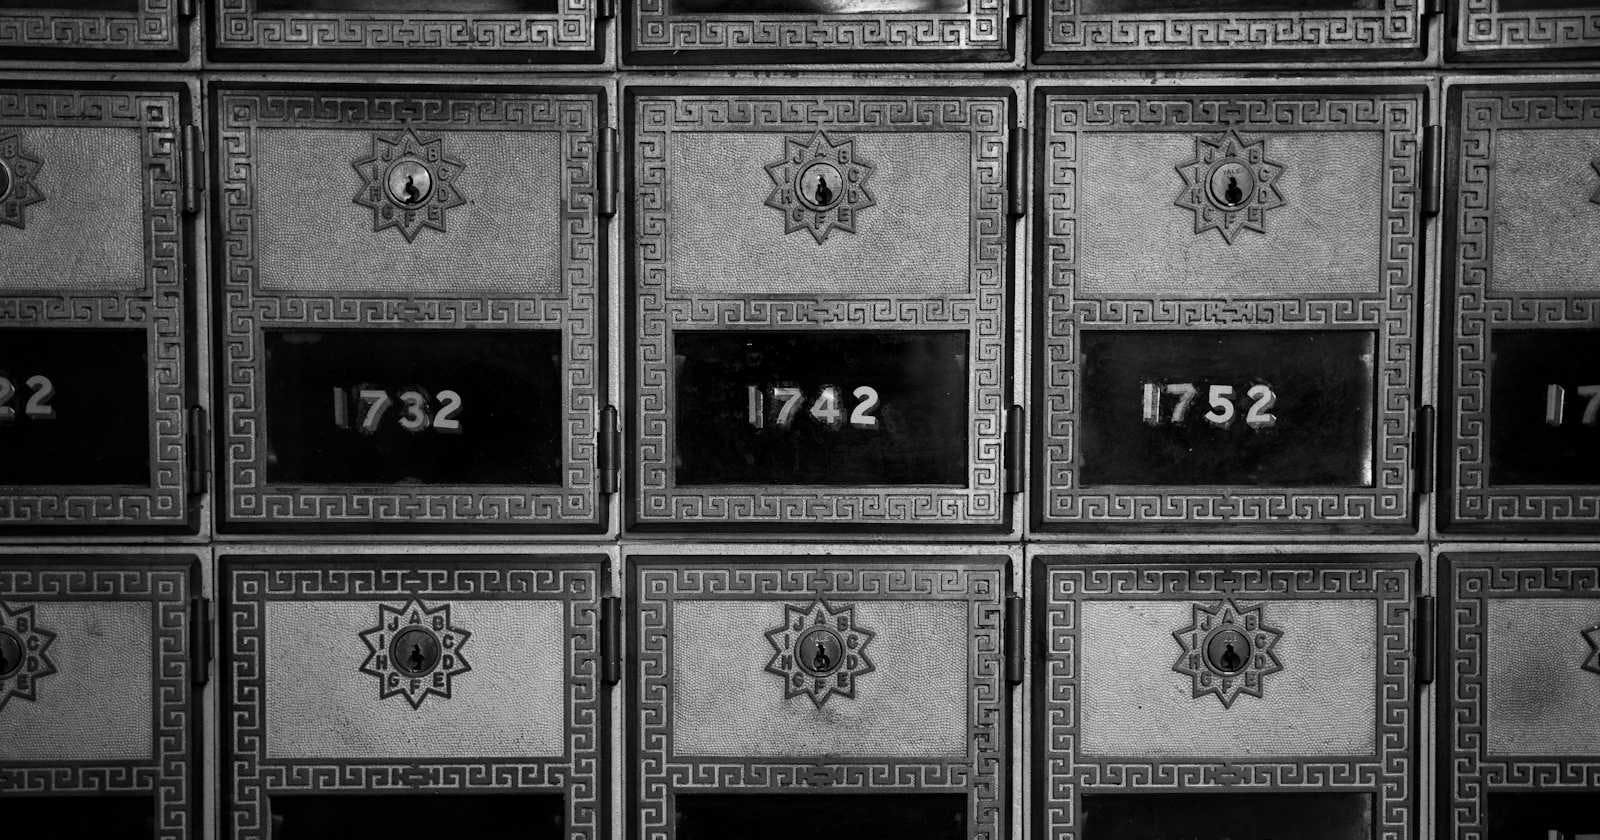 Kafka - The Post Office of Data